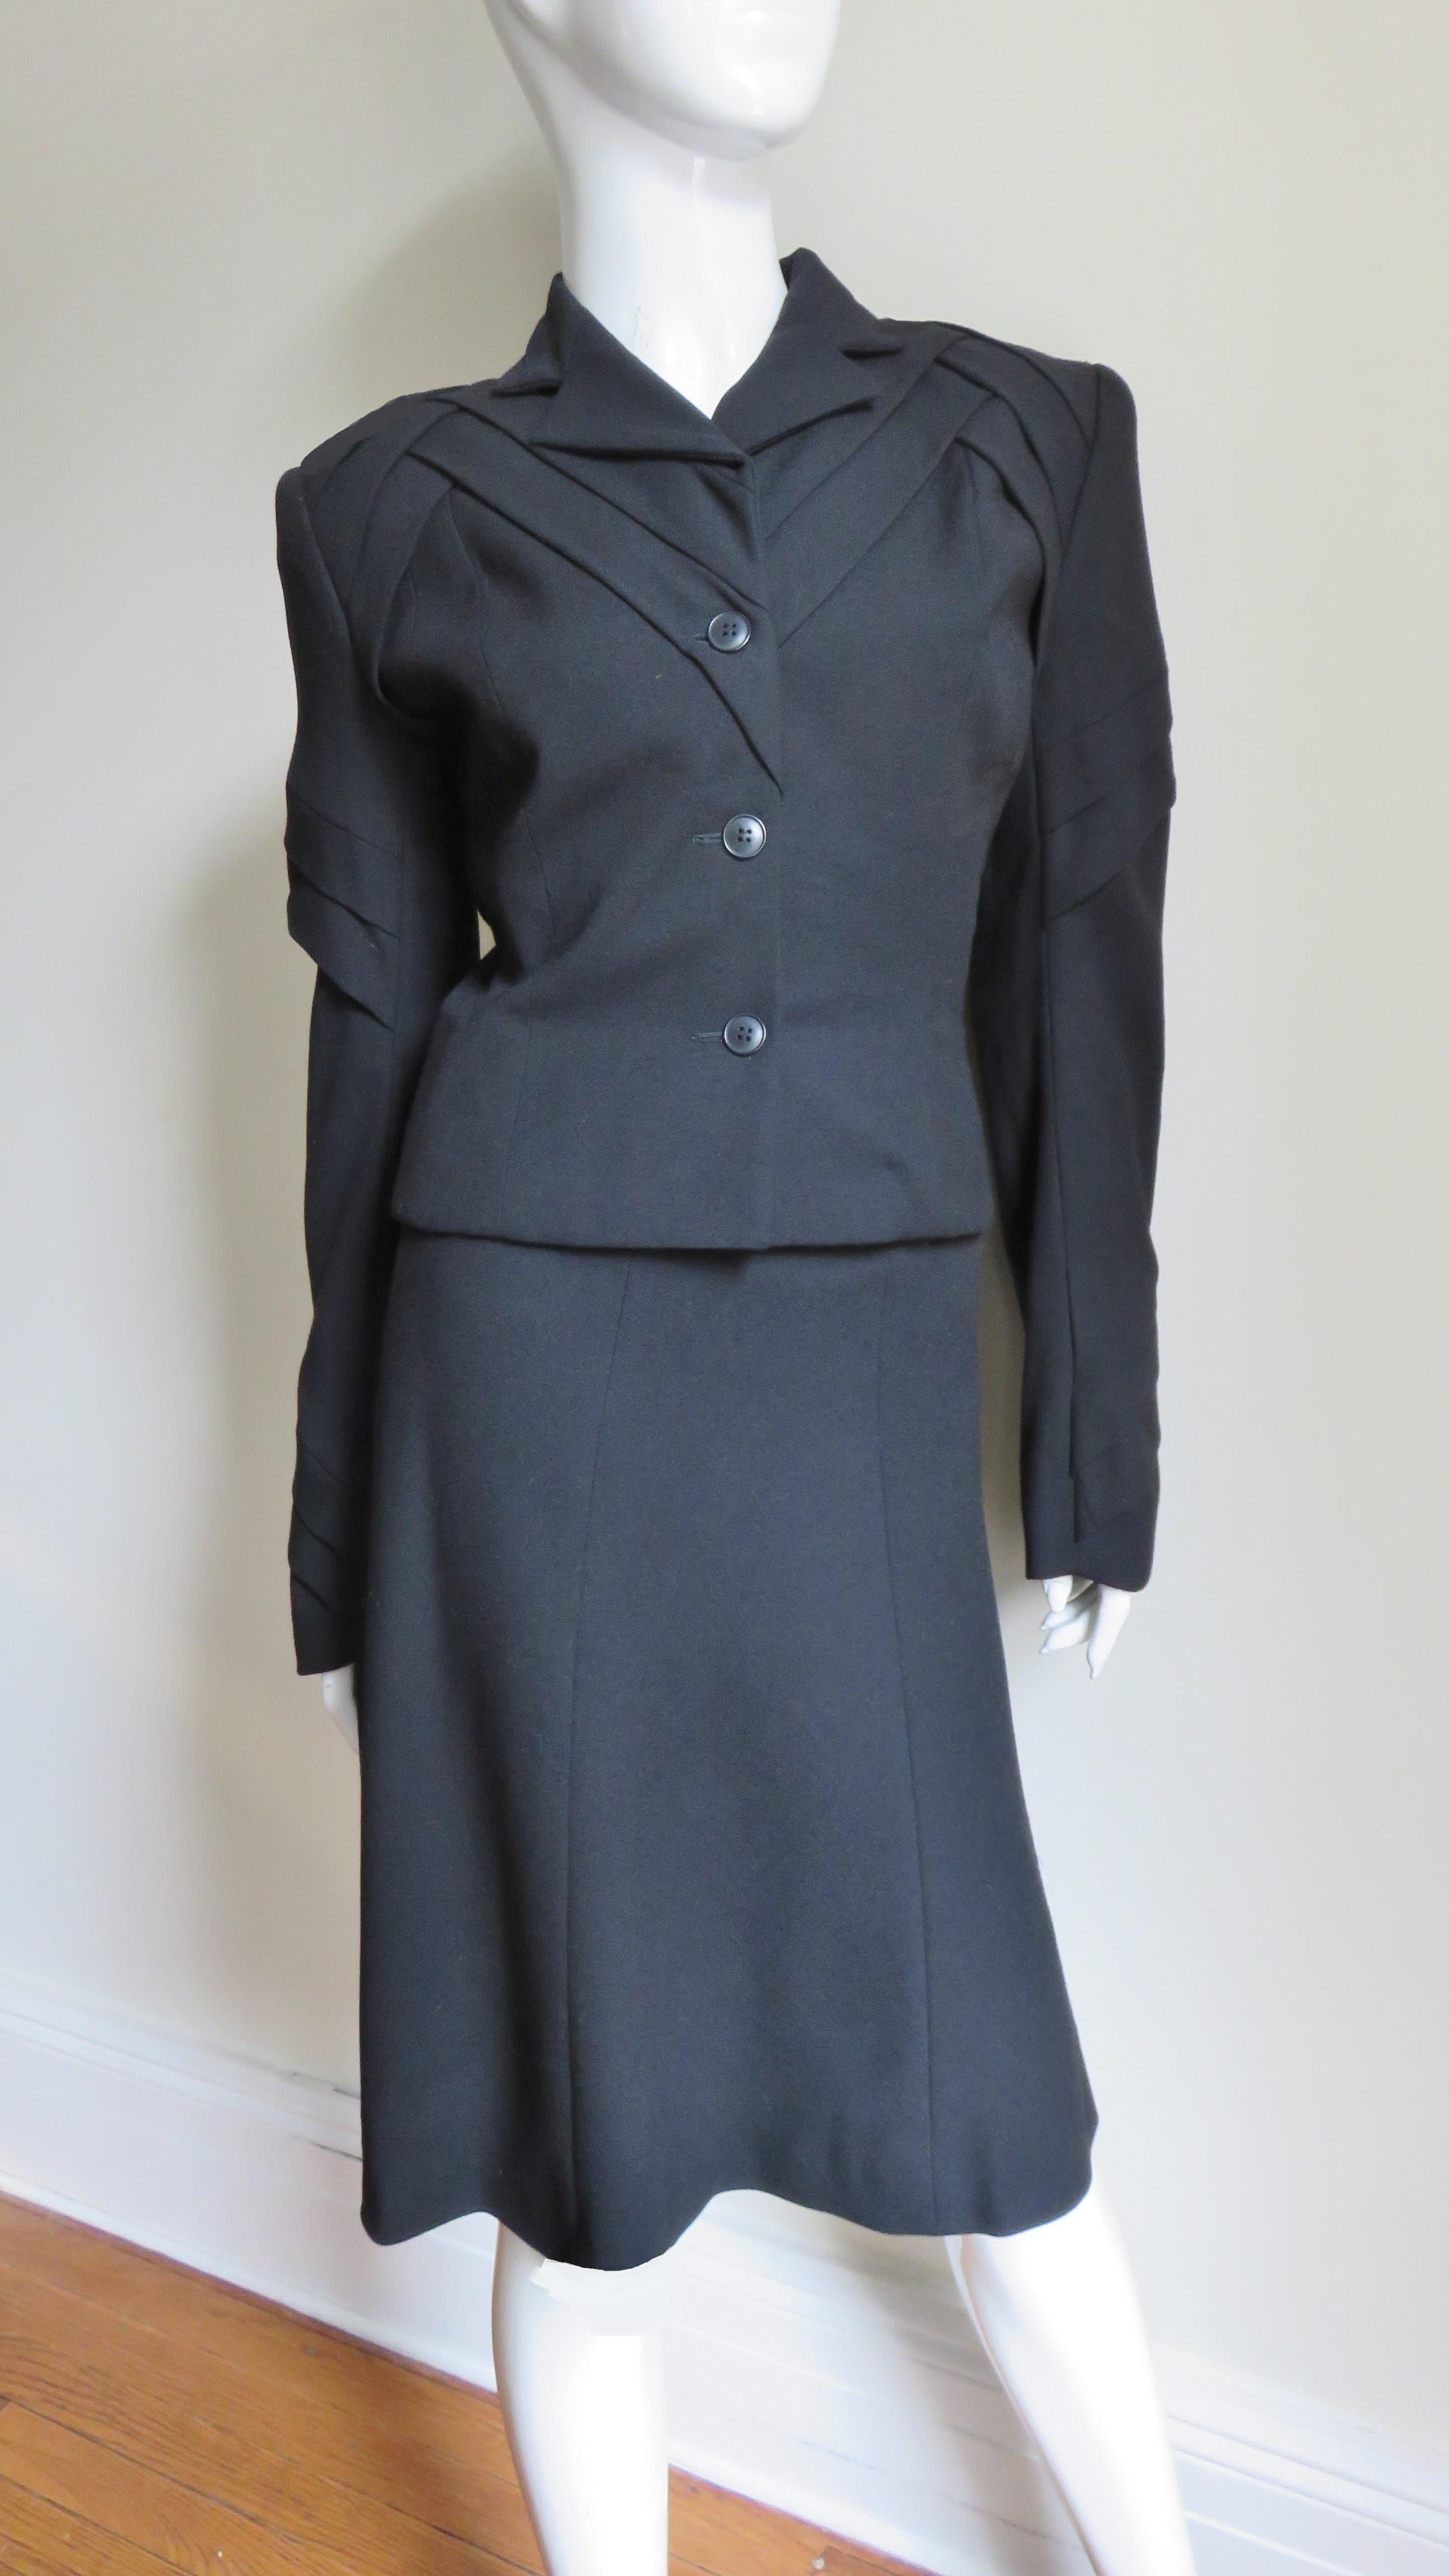 Un magnifique costume en laine noire, revisité par John Galliano.  Il s'agit d'une veste à boutonnage unique, longue comme la hanche, avec de petits revers et de superbes détails sur le haut de la veste, y compris les manches, créant des angles et